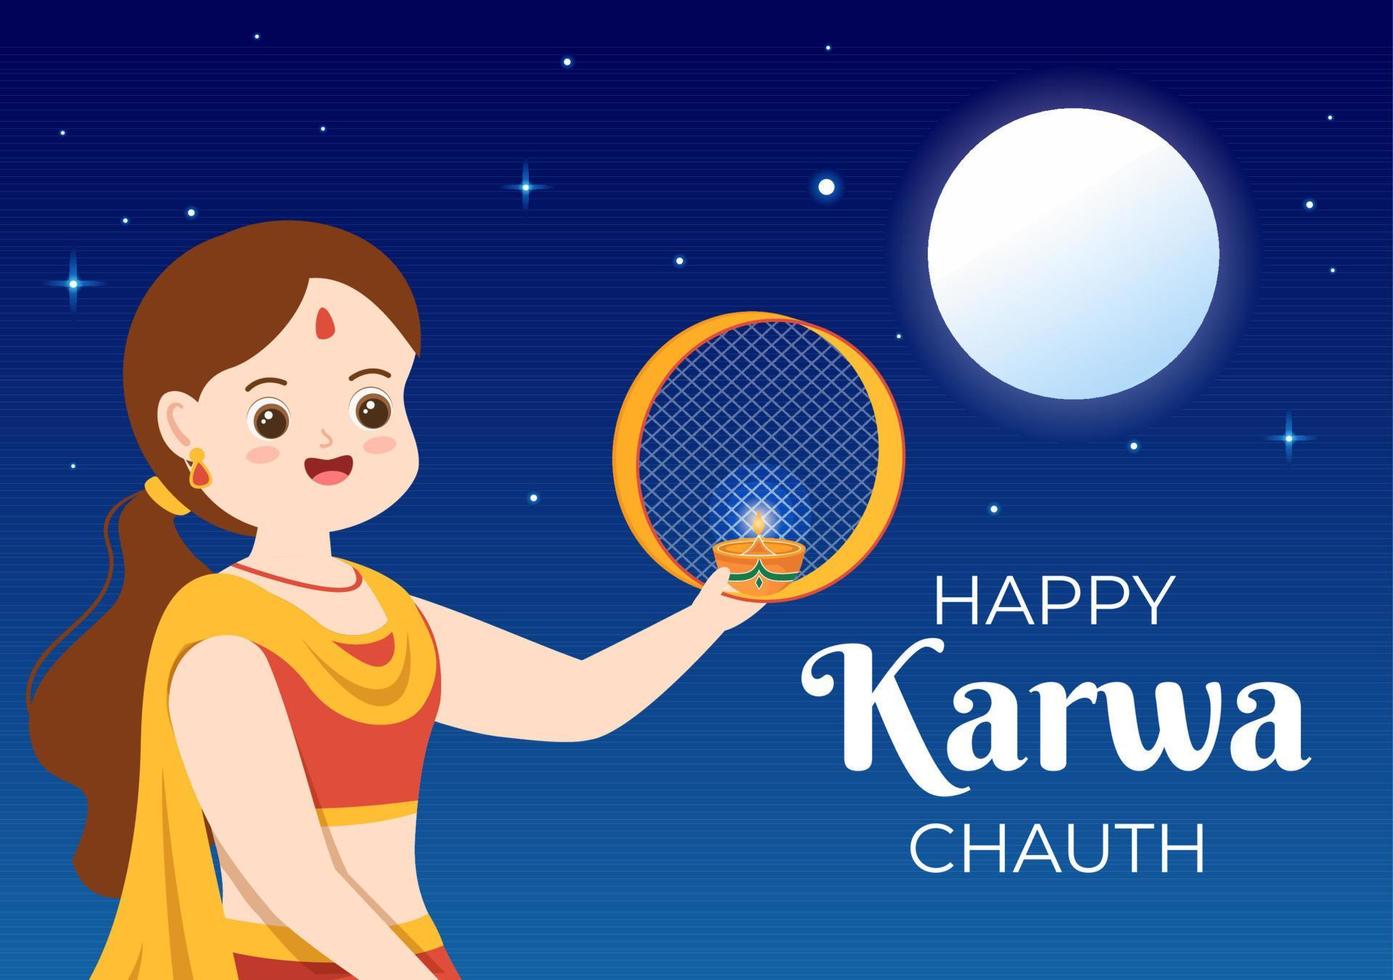 ilustración de dibujos animados plana dibujada a mano del festival karwa chauth para comenzar la luna nueva al ver la salida de la luna en noviembre de esposas para sus esposos vector